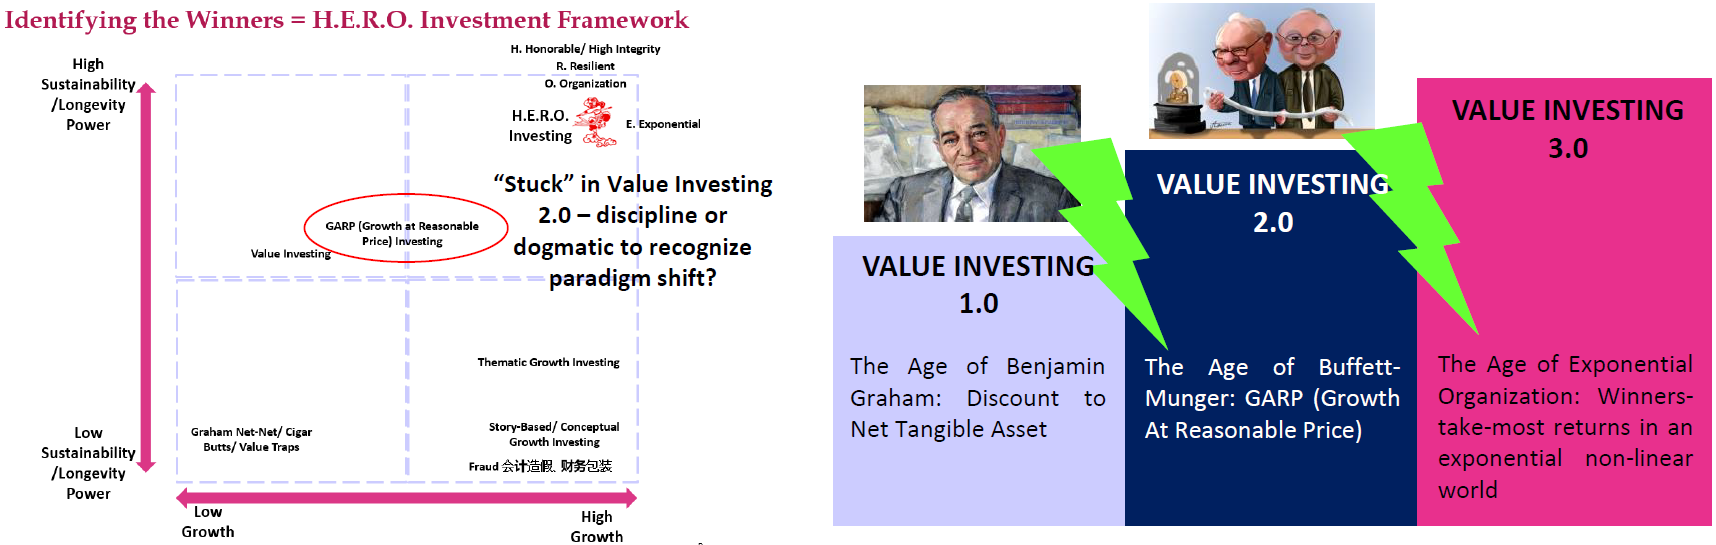 Value Investing 3.0